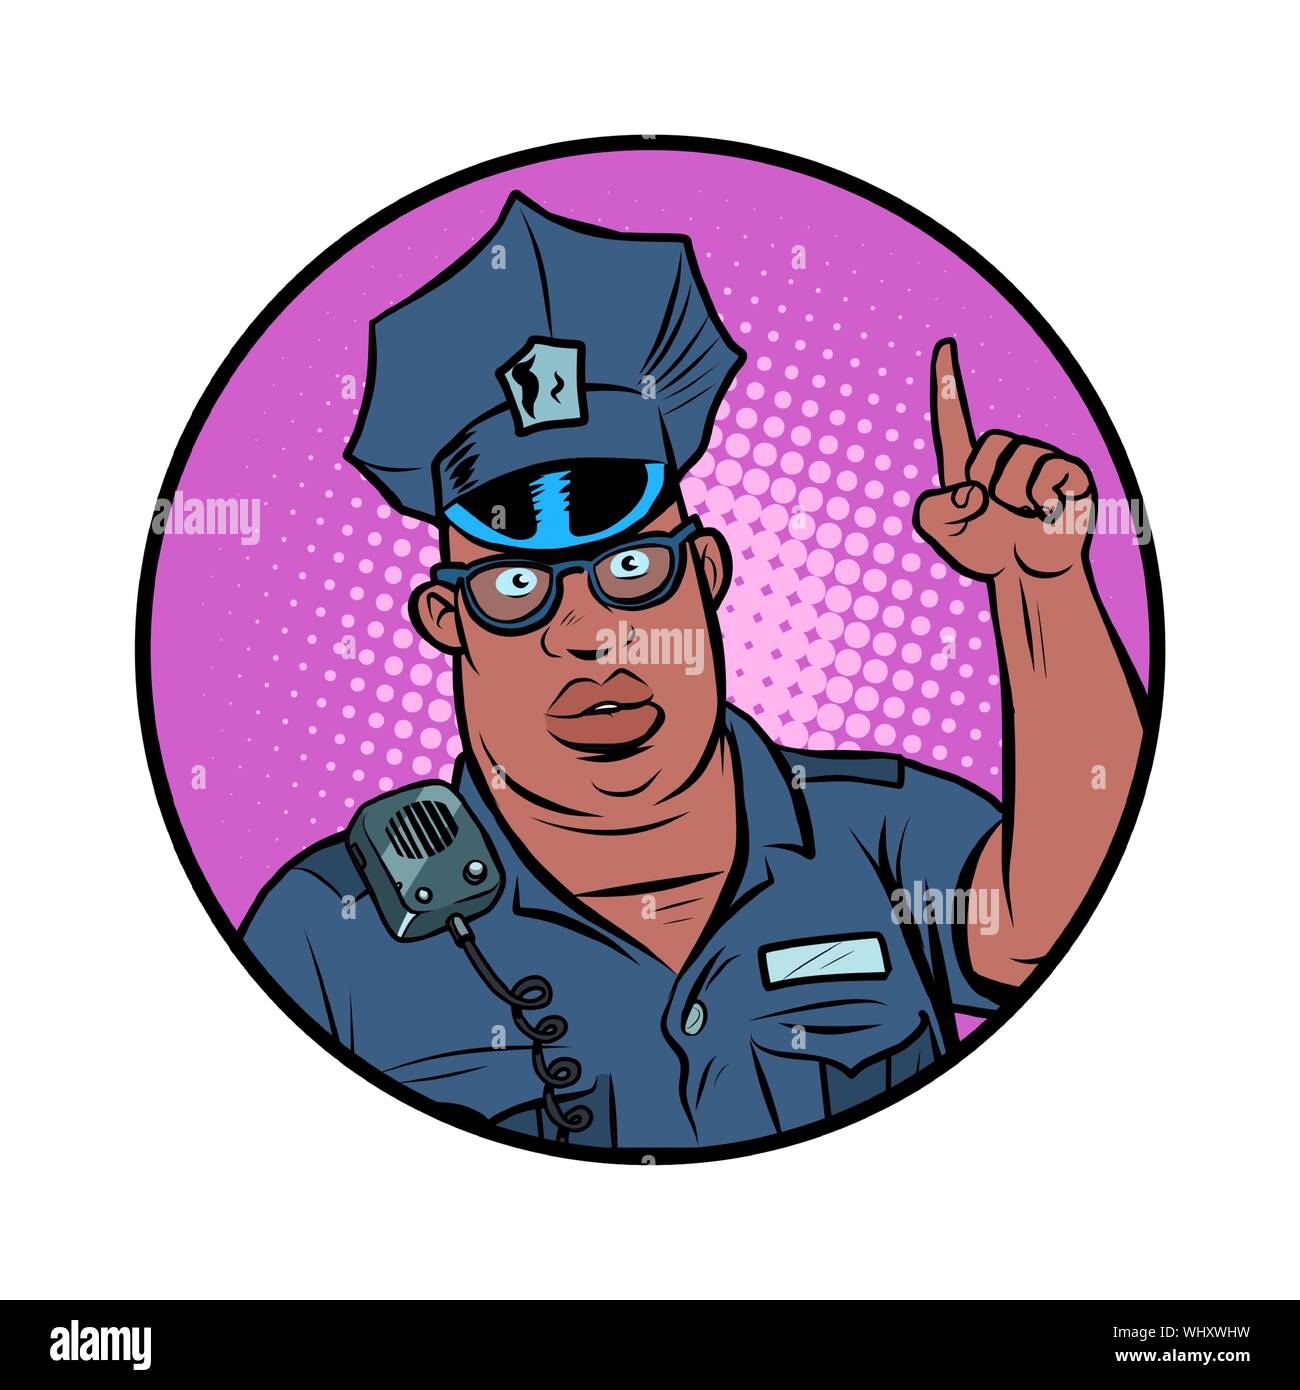 African Police Officer Index Finger nach oben. Comic cartoon Pop Art retro Vektor Zeichnung Abbildung Stock Vektor